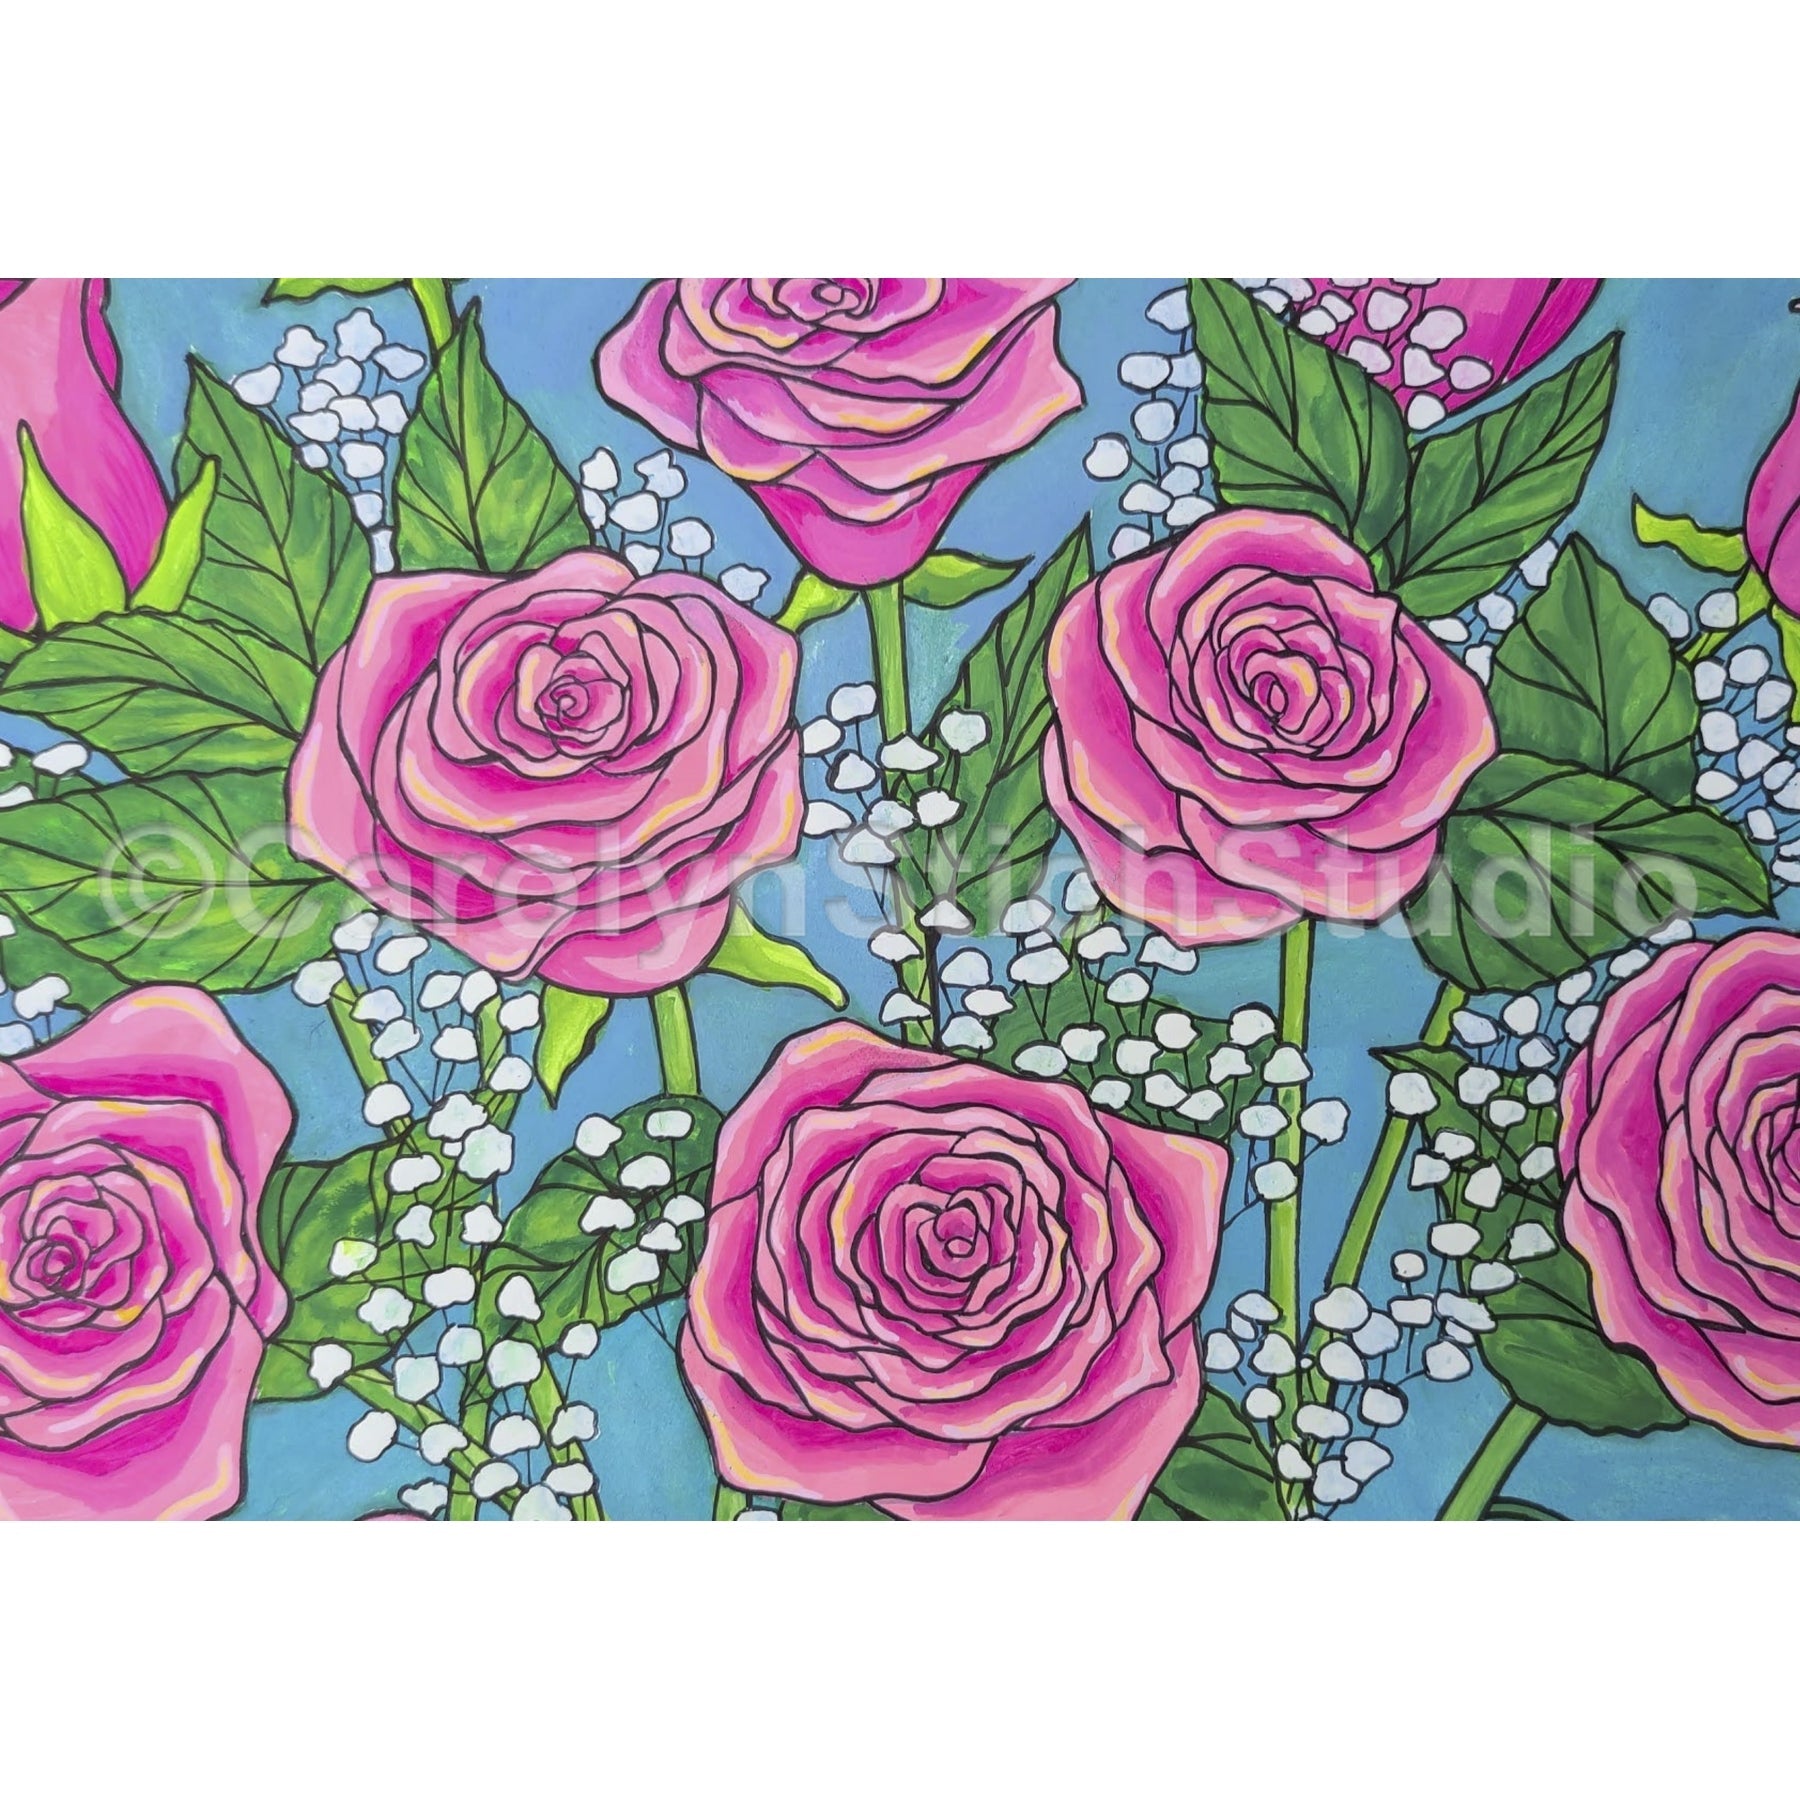 Roses, rug hooking pattern